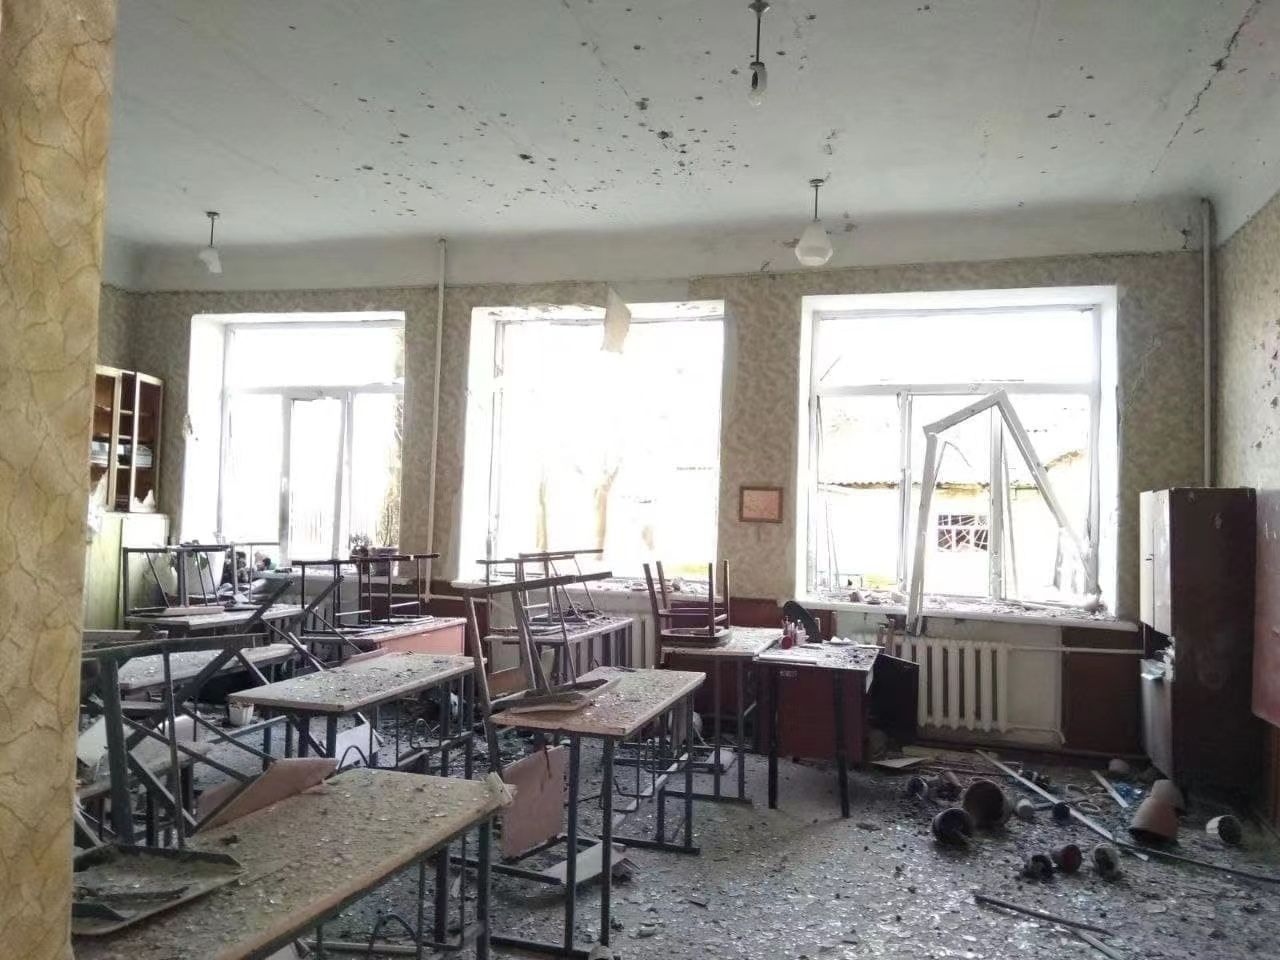 乌东顿涅茨克民间武装称当地两座学校遭炮击